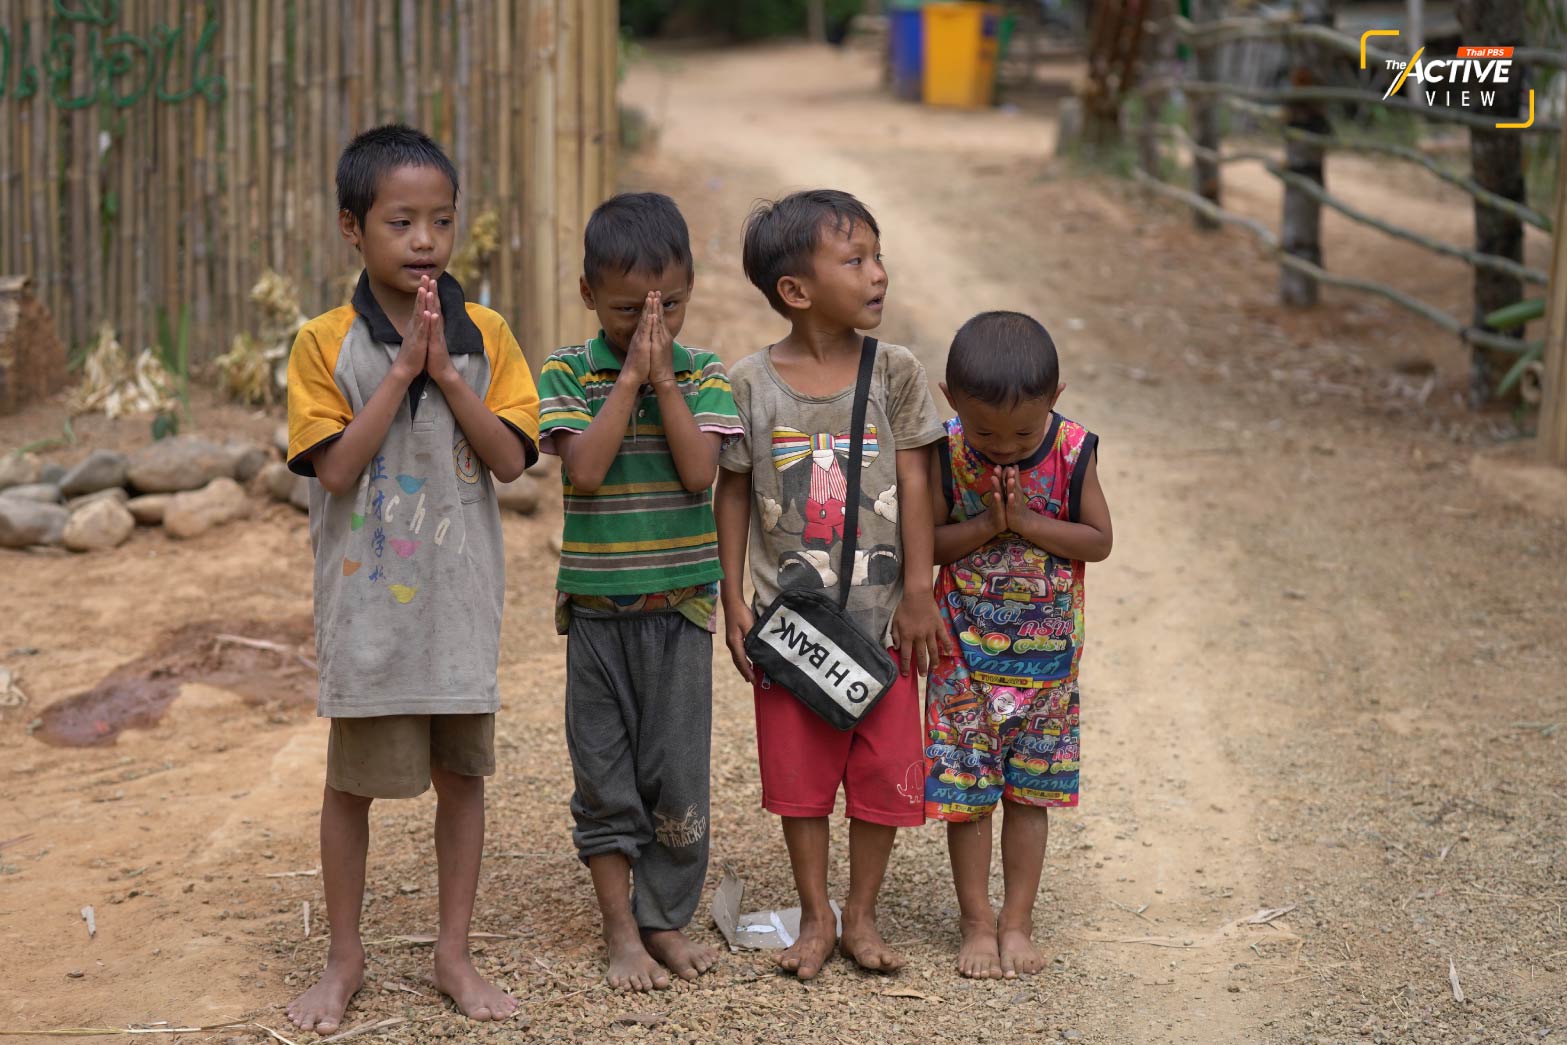 ทันทีที่ข้ามสะพานเข้าสู่หมู่บ้าน เด็ก ๆ ที่นี่วิ่งกรูมาหาและยกมือไหว้ กล่าวทักทายด้วยภาษาไทย
